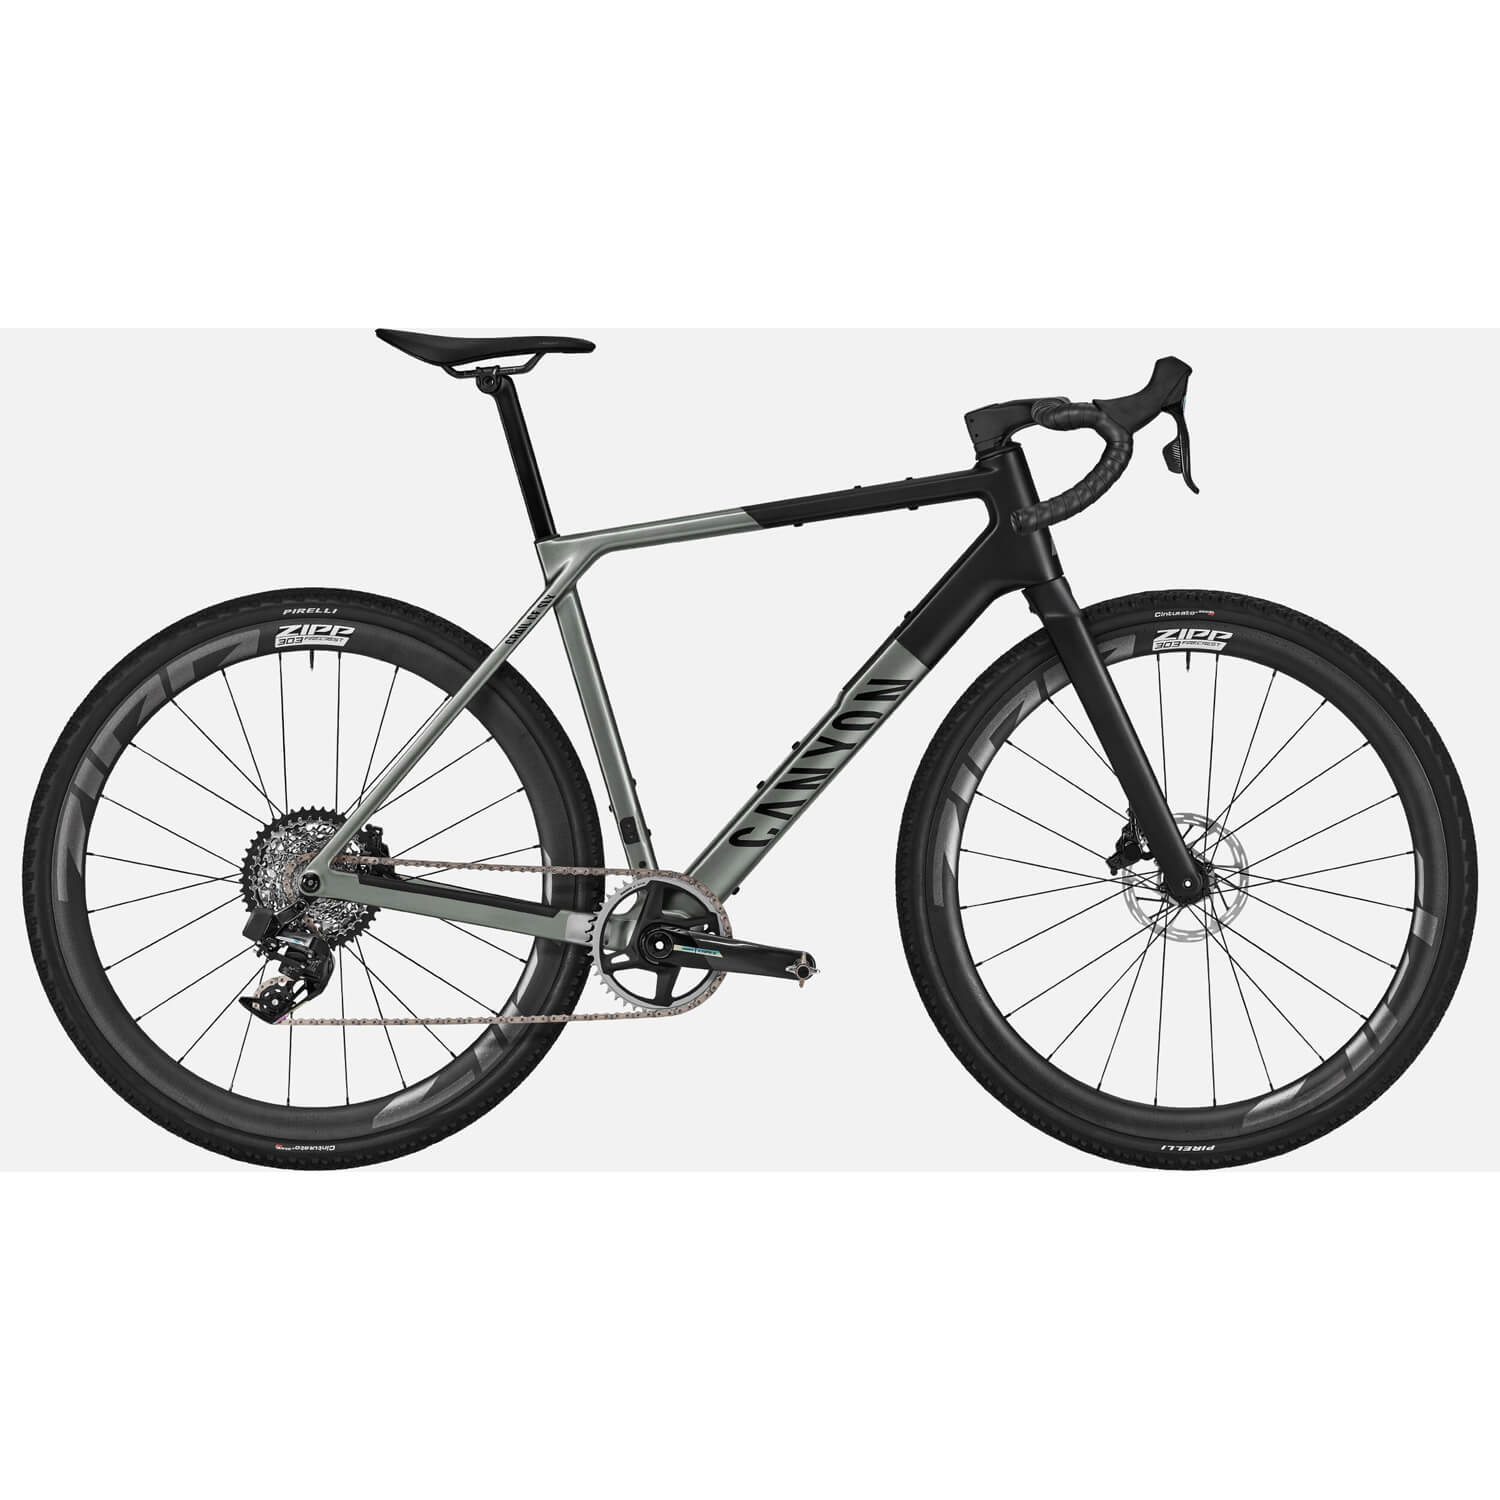 Гравийный велосипед Canyon Grail CF SLX 8 AXS, серый